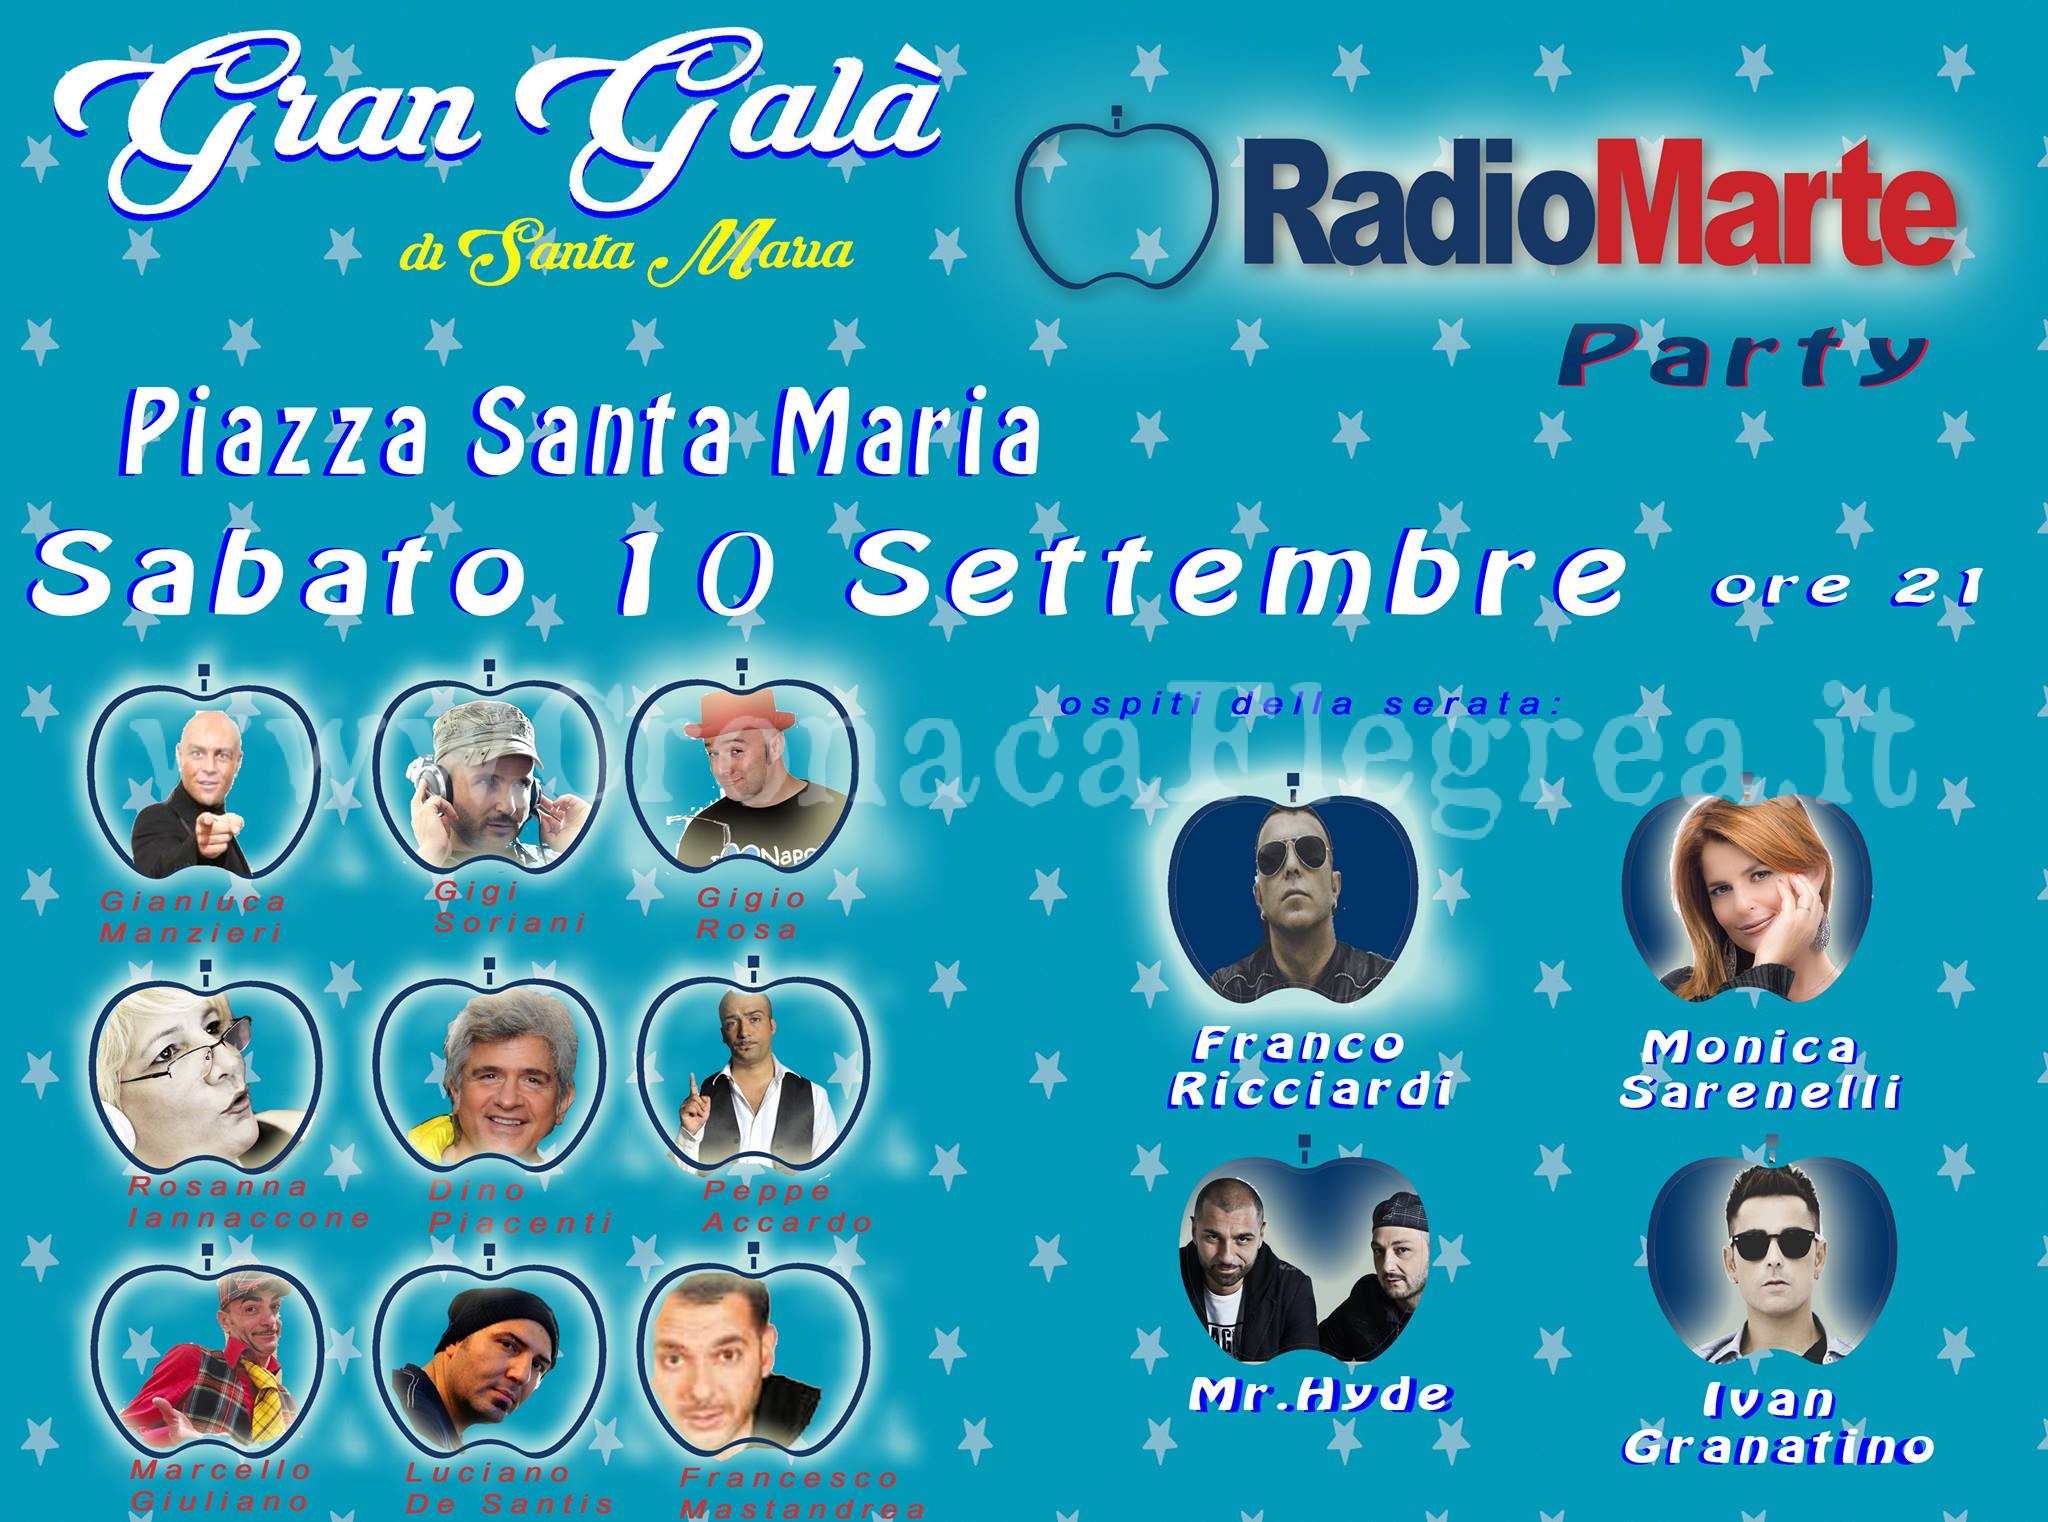 QUARTO/ Questa sera il Radio Marte Party, sul palco Franco Ricciardi e Monica Sarnelli